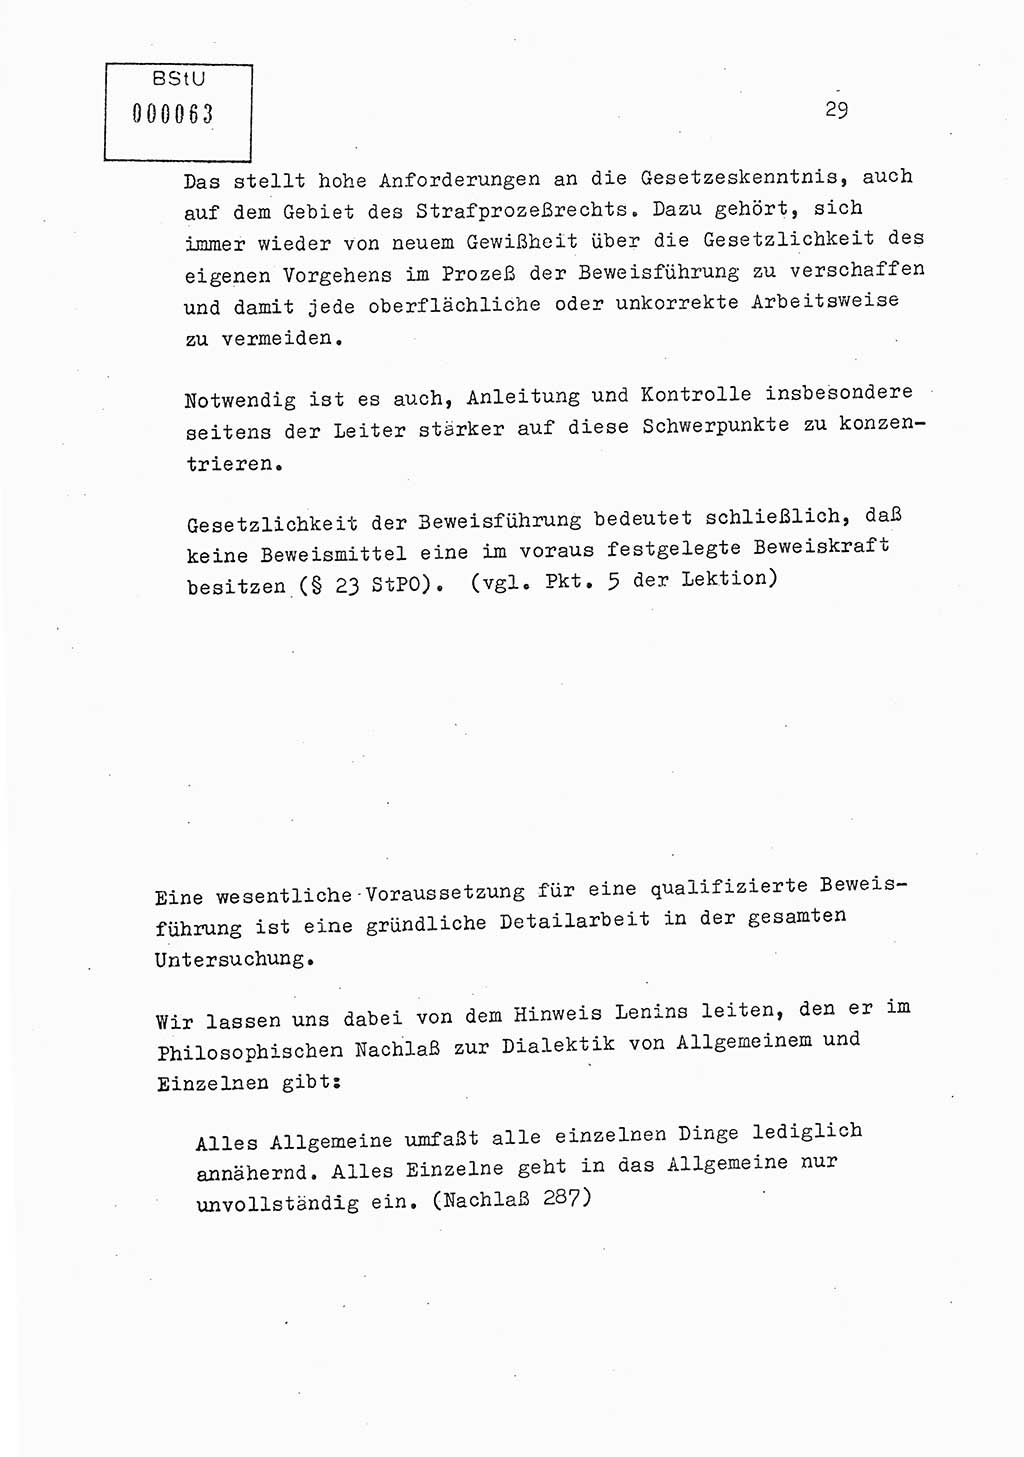 Lektion Ministerium für Staatssicherheit (MfS) [Deutsche Demokratische Republik (DDR)], Hauptabteilung (HA) Ⅸ, Berlin 1979, Seite 29 (Lekt. Bew.-Fü. EV MfS DDR HA Ⅸ 1979, S. 29)